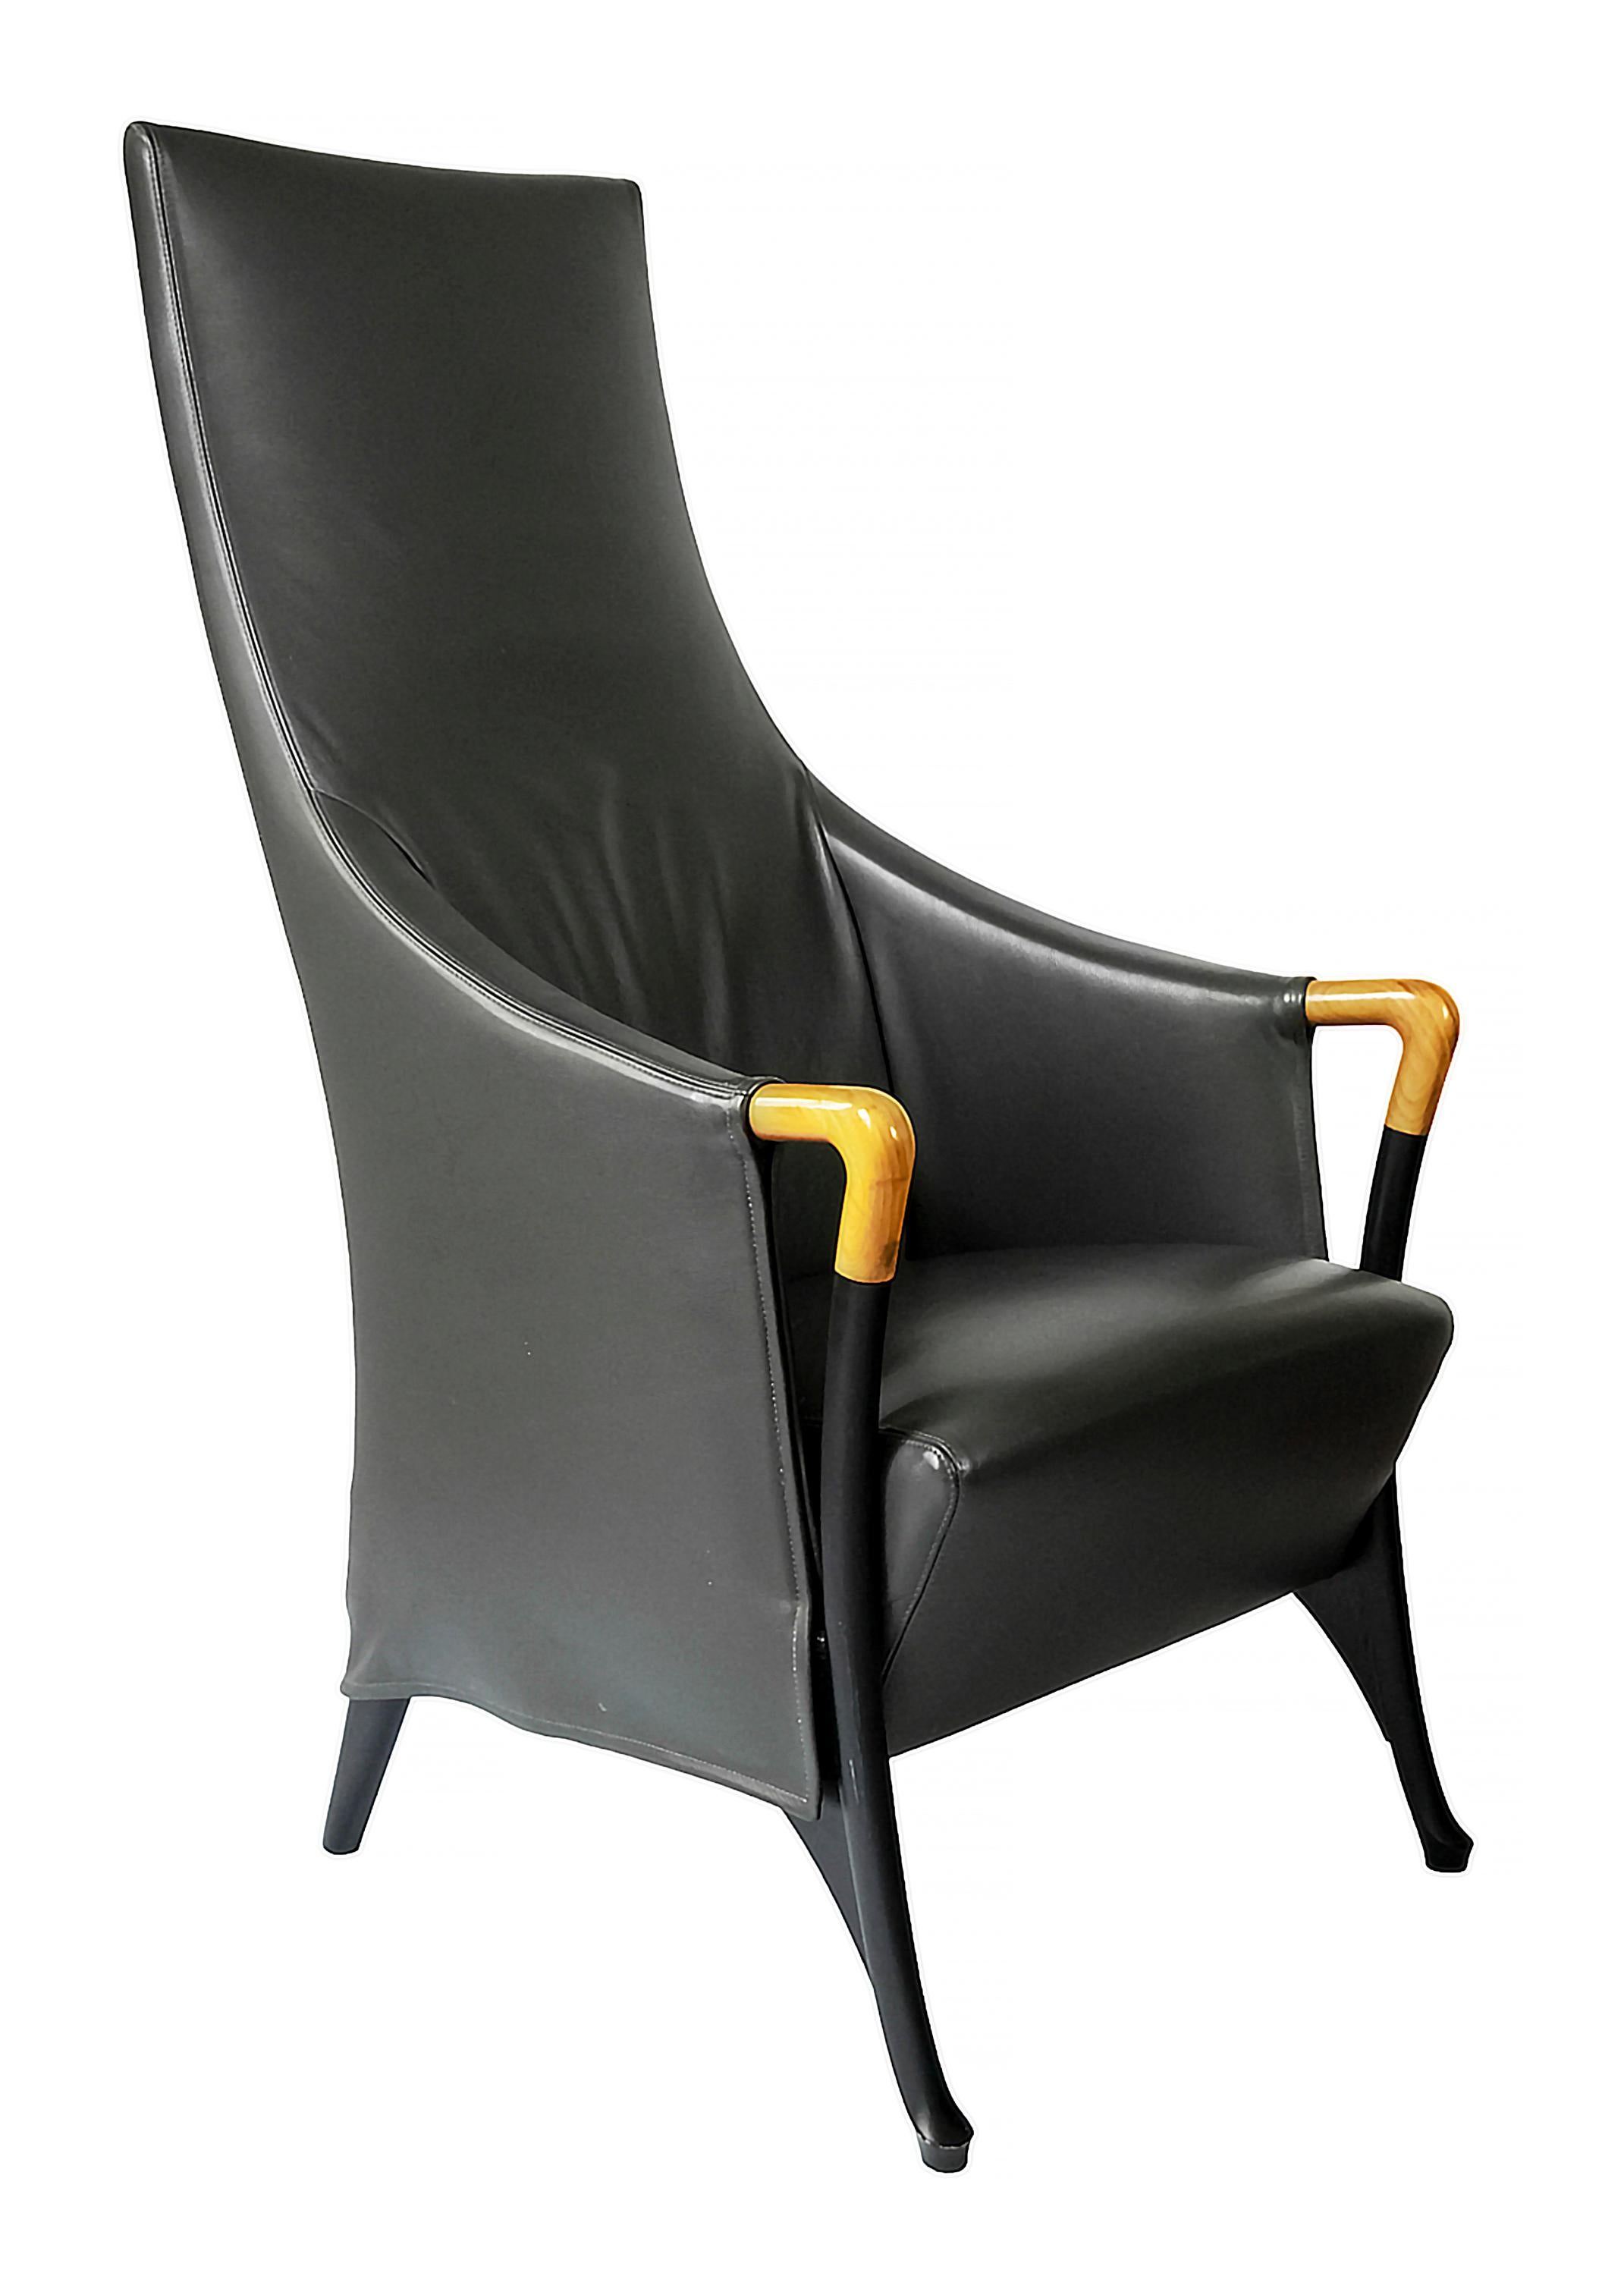 Vintage Progetti Sessel, entworfen von Umberto Asnago.
Herstellungsdatum ca. 1980 von Giorgetti, Italien.
Etikett und Stempel auf der Unterseite.
Aus dunkelgrauem Leder mit abnehmbarem Bezug und Holzgestell.
Sehr guter/exzellenter